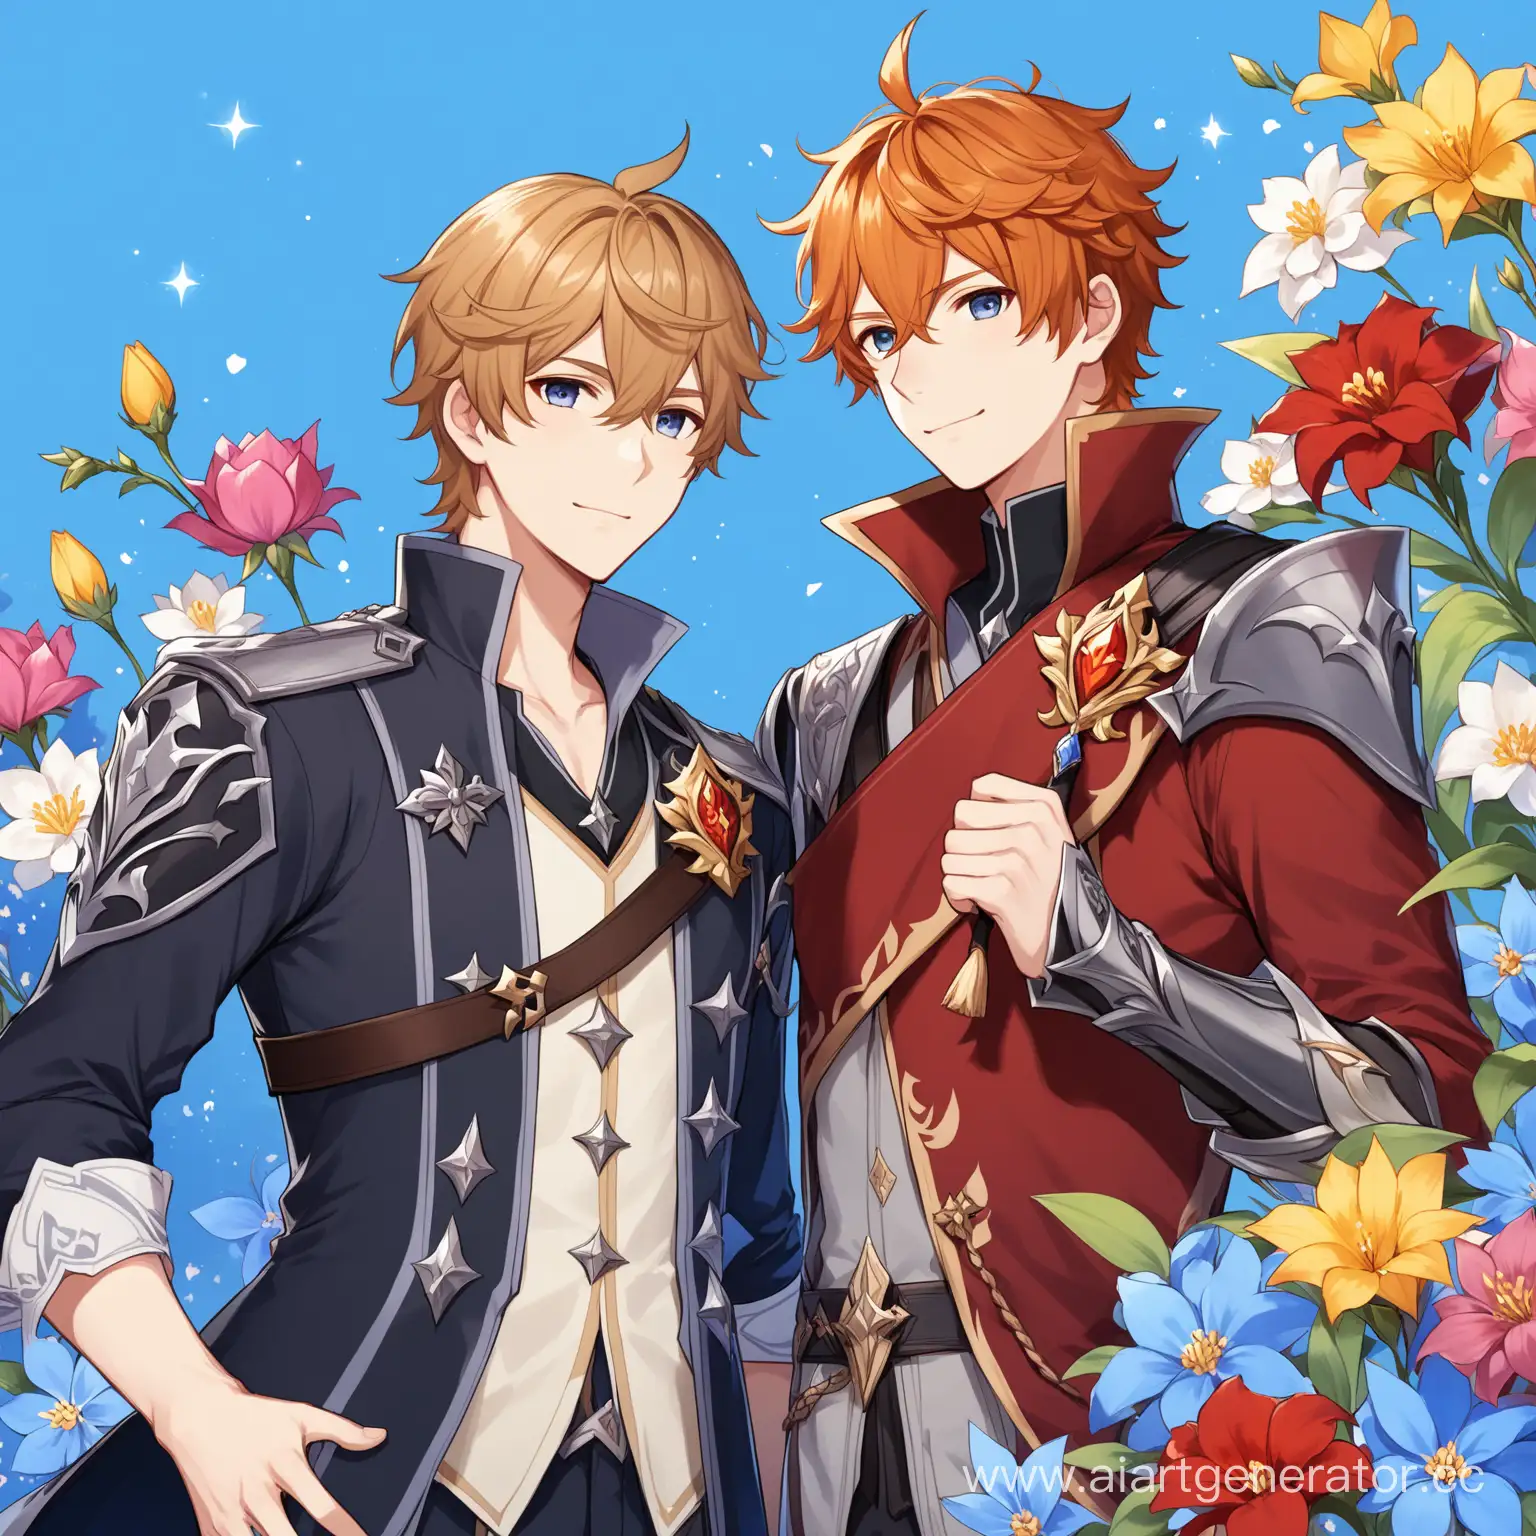 Персонажи игры Genshin impact Нëвиллет и Тарталья, синий фон, звезды подпись:" Flowers shows. Gaming "